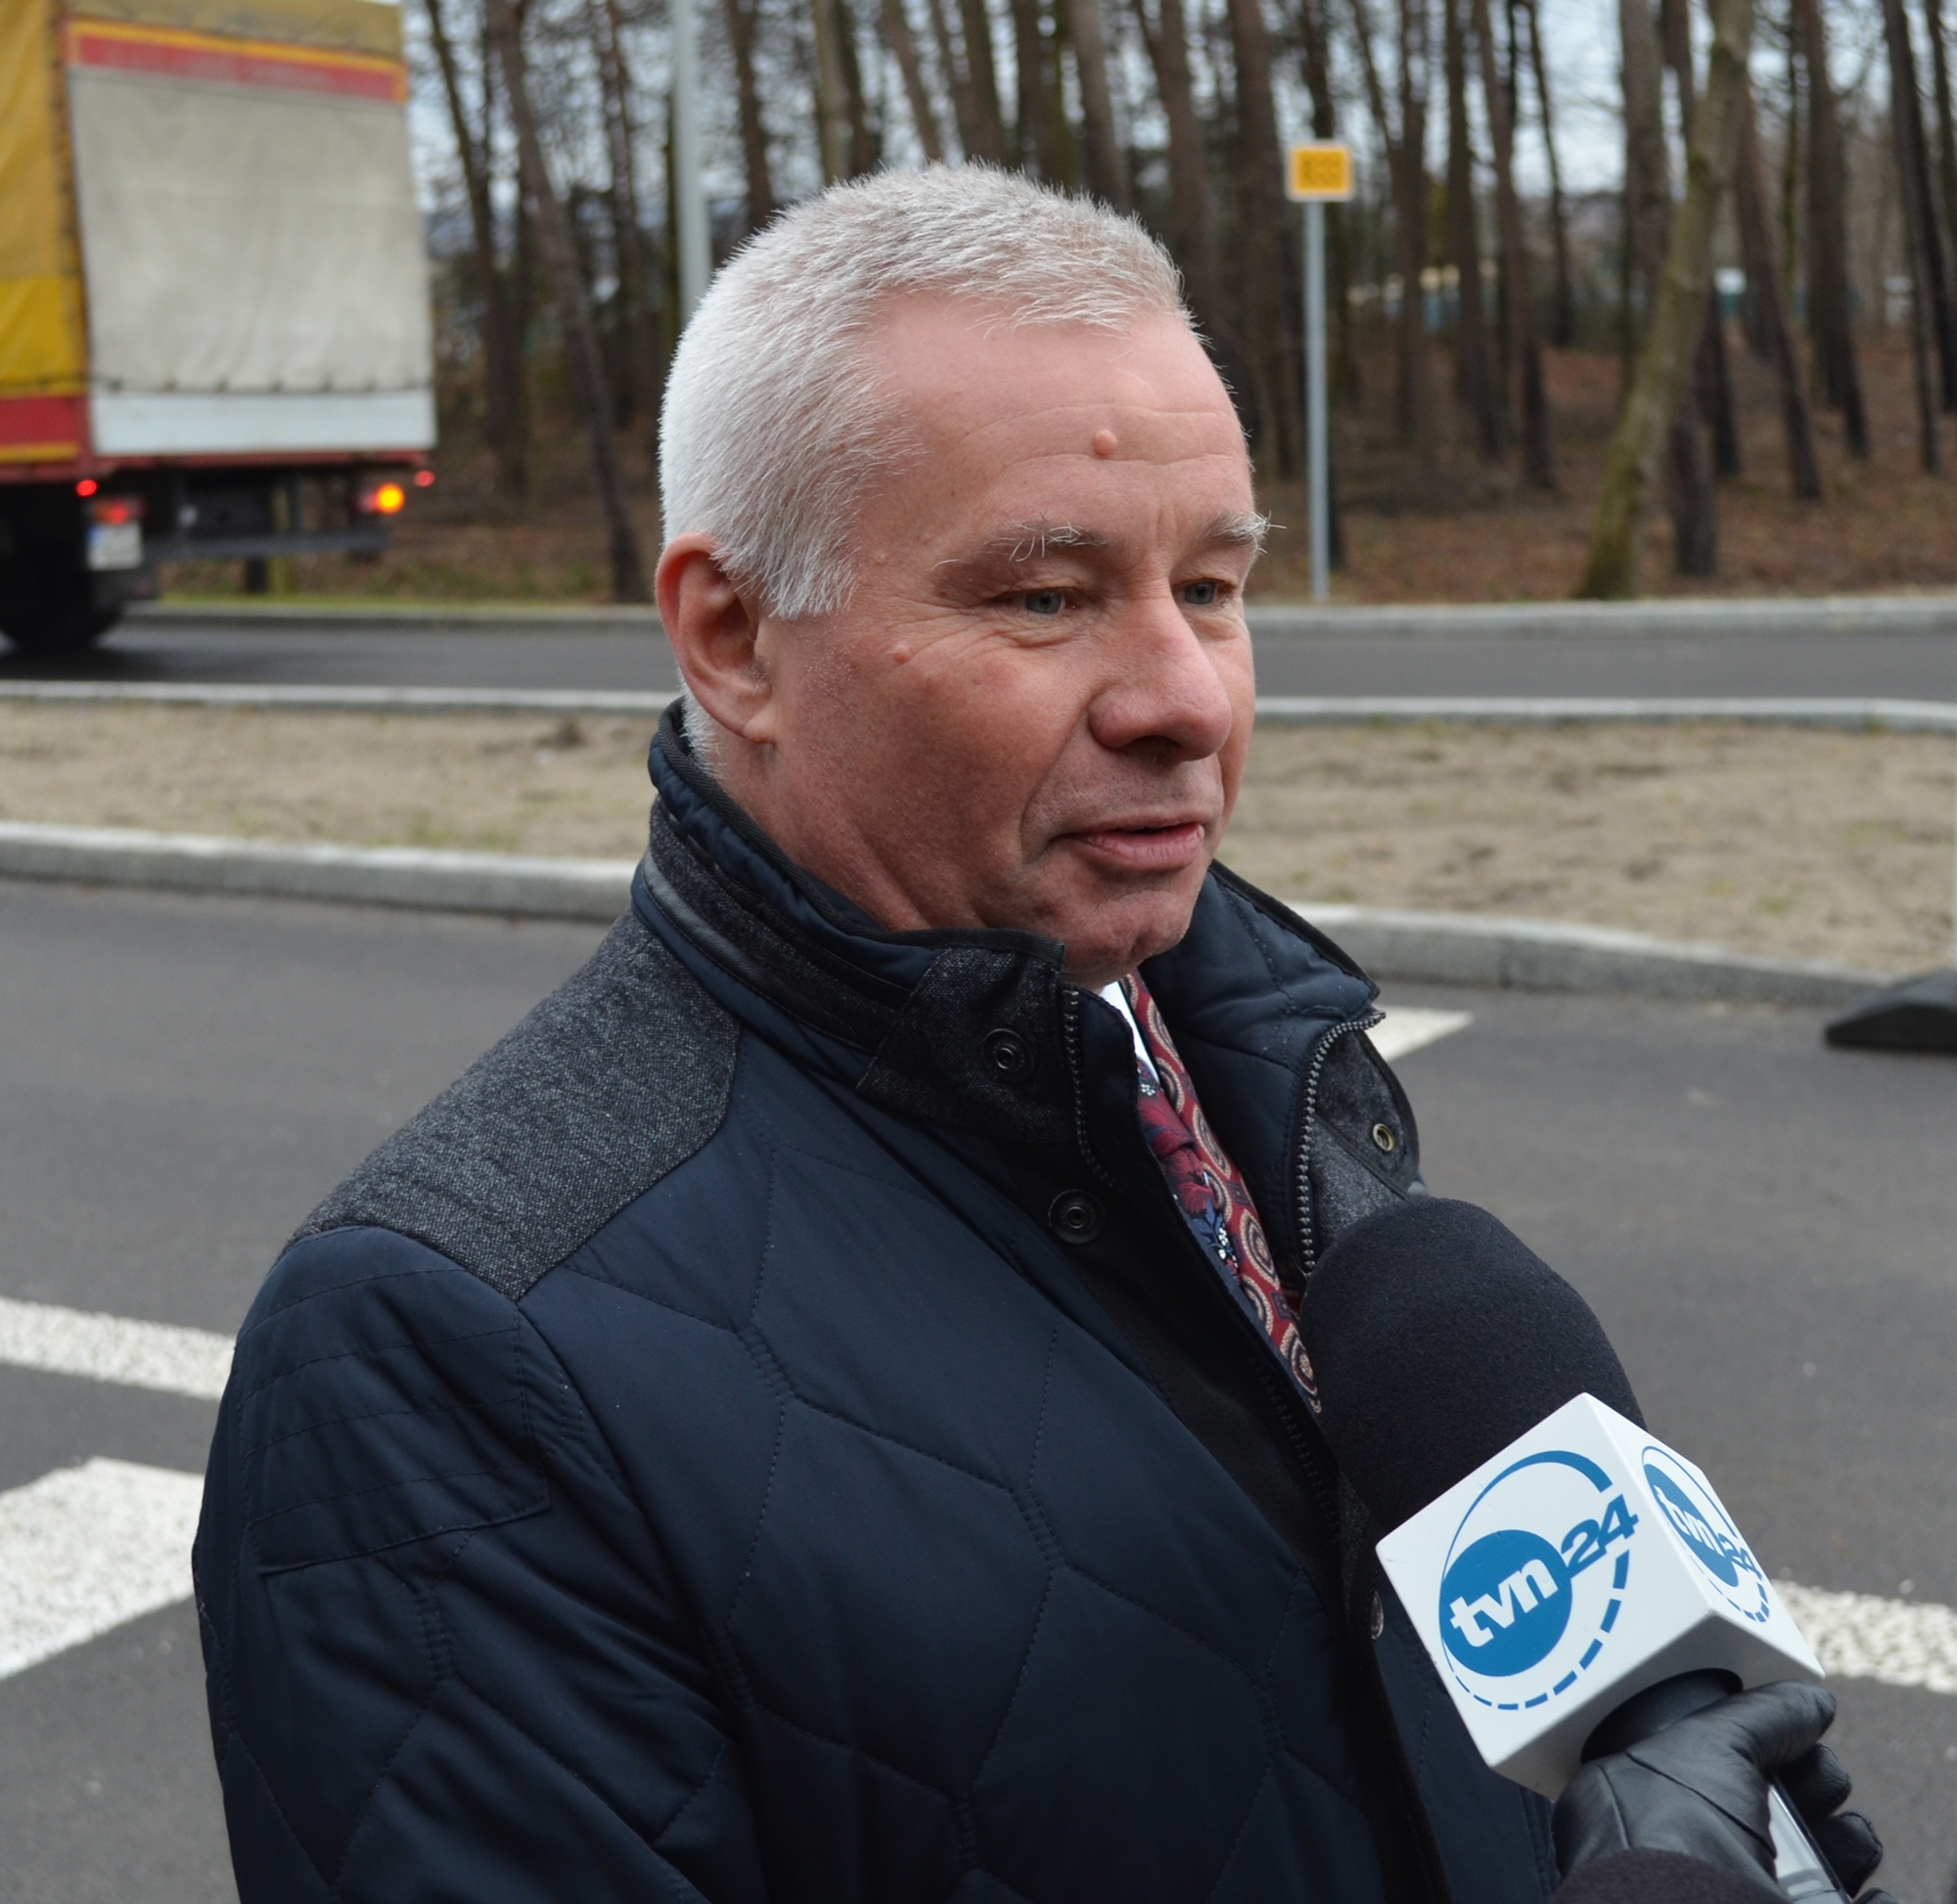 Na zdjęciu widzimy starostę powiatu kraśnickiego Andrzeja Rollę który udziela wywiadu telewizji TVN24